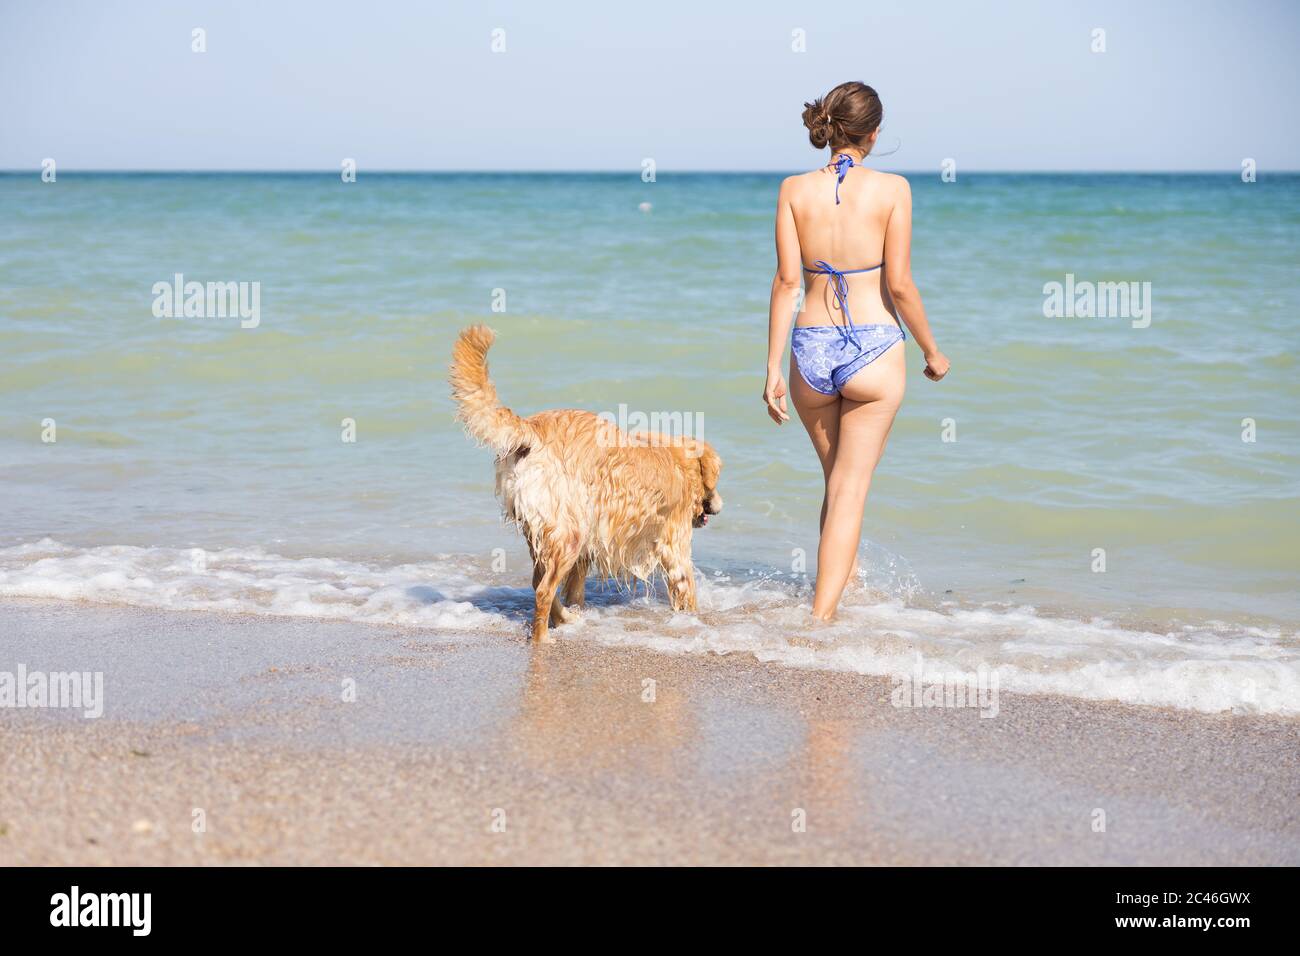 La jeune femme en maillot de bain et son chien entrent dans la mer Banque D'Images